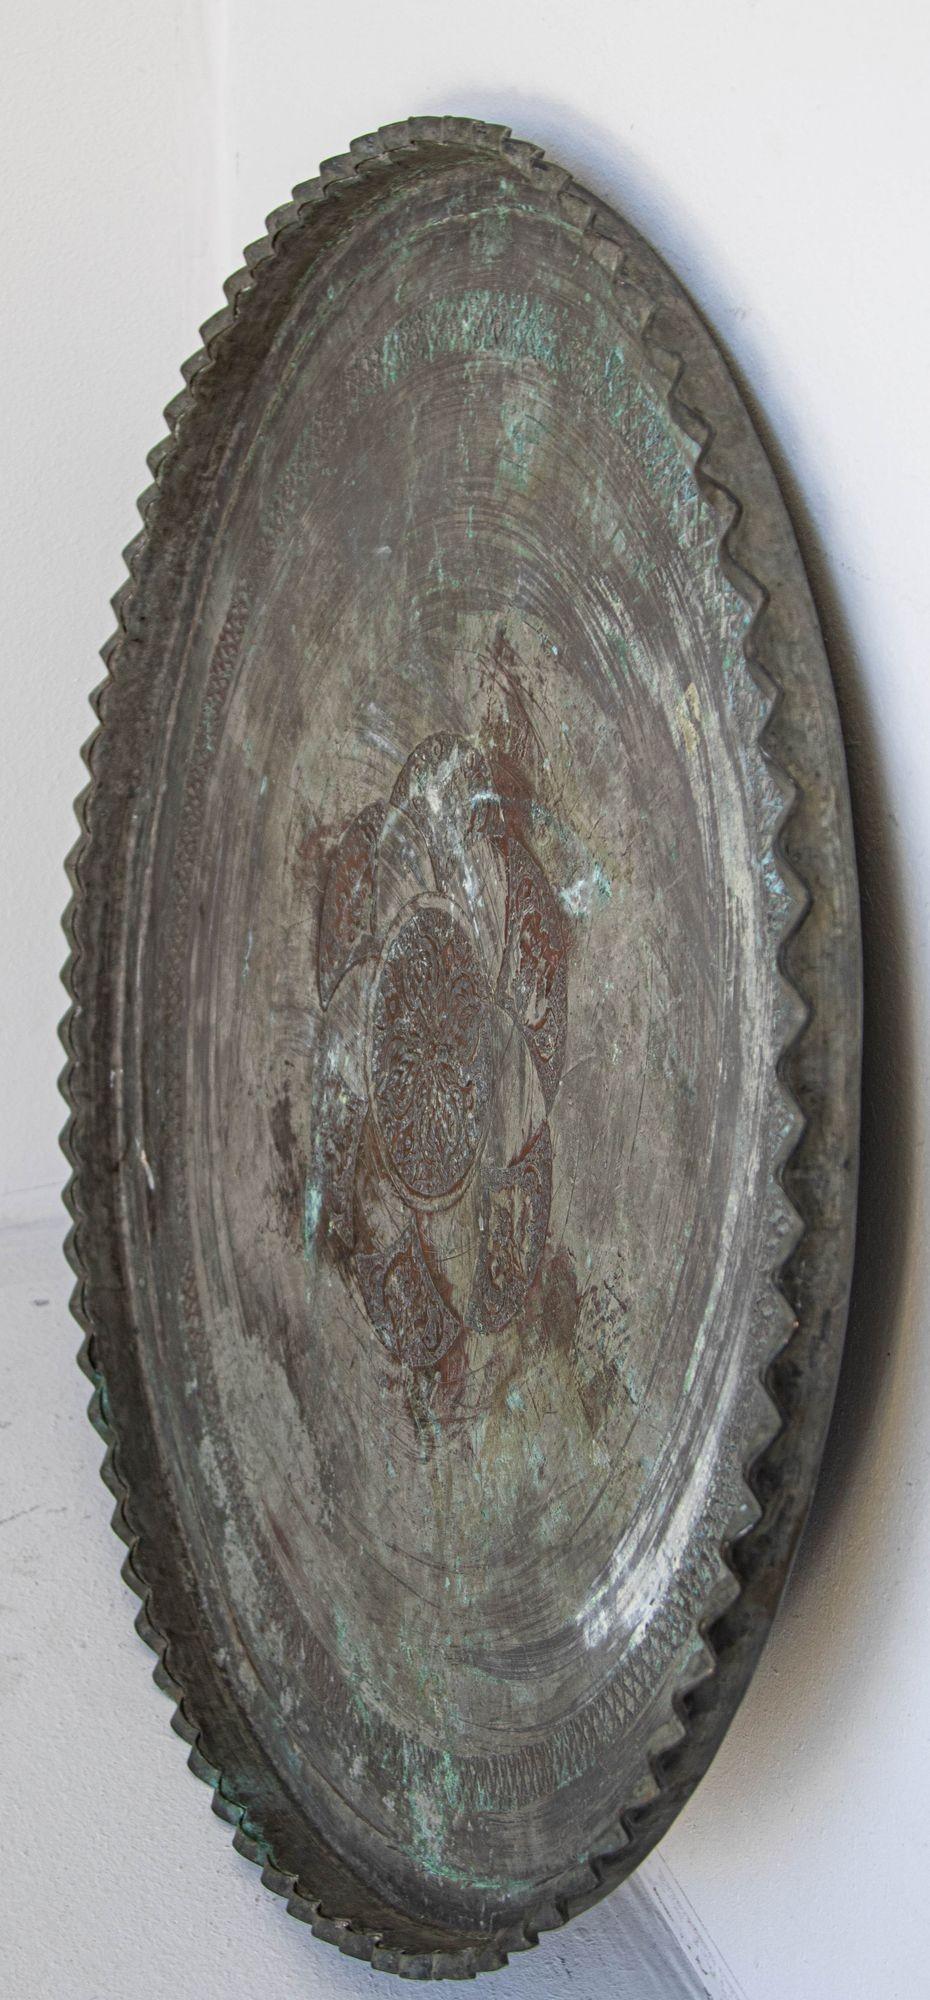 Antike große verzinnte Kupfer Ottoman türkischen Tablett.
Großes rundes osmanisches, türkisch-asiatisches, verzinntes Kupfertablett aus dem späten 19. und frühen 20.
Antikes türkisches verzinntes Kupfertablett in runder Form mit tiefem,